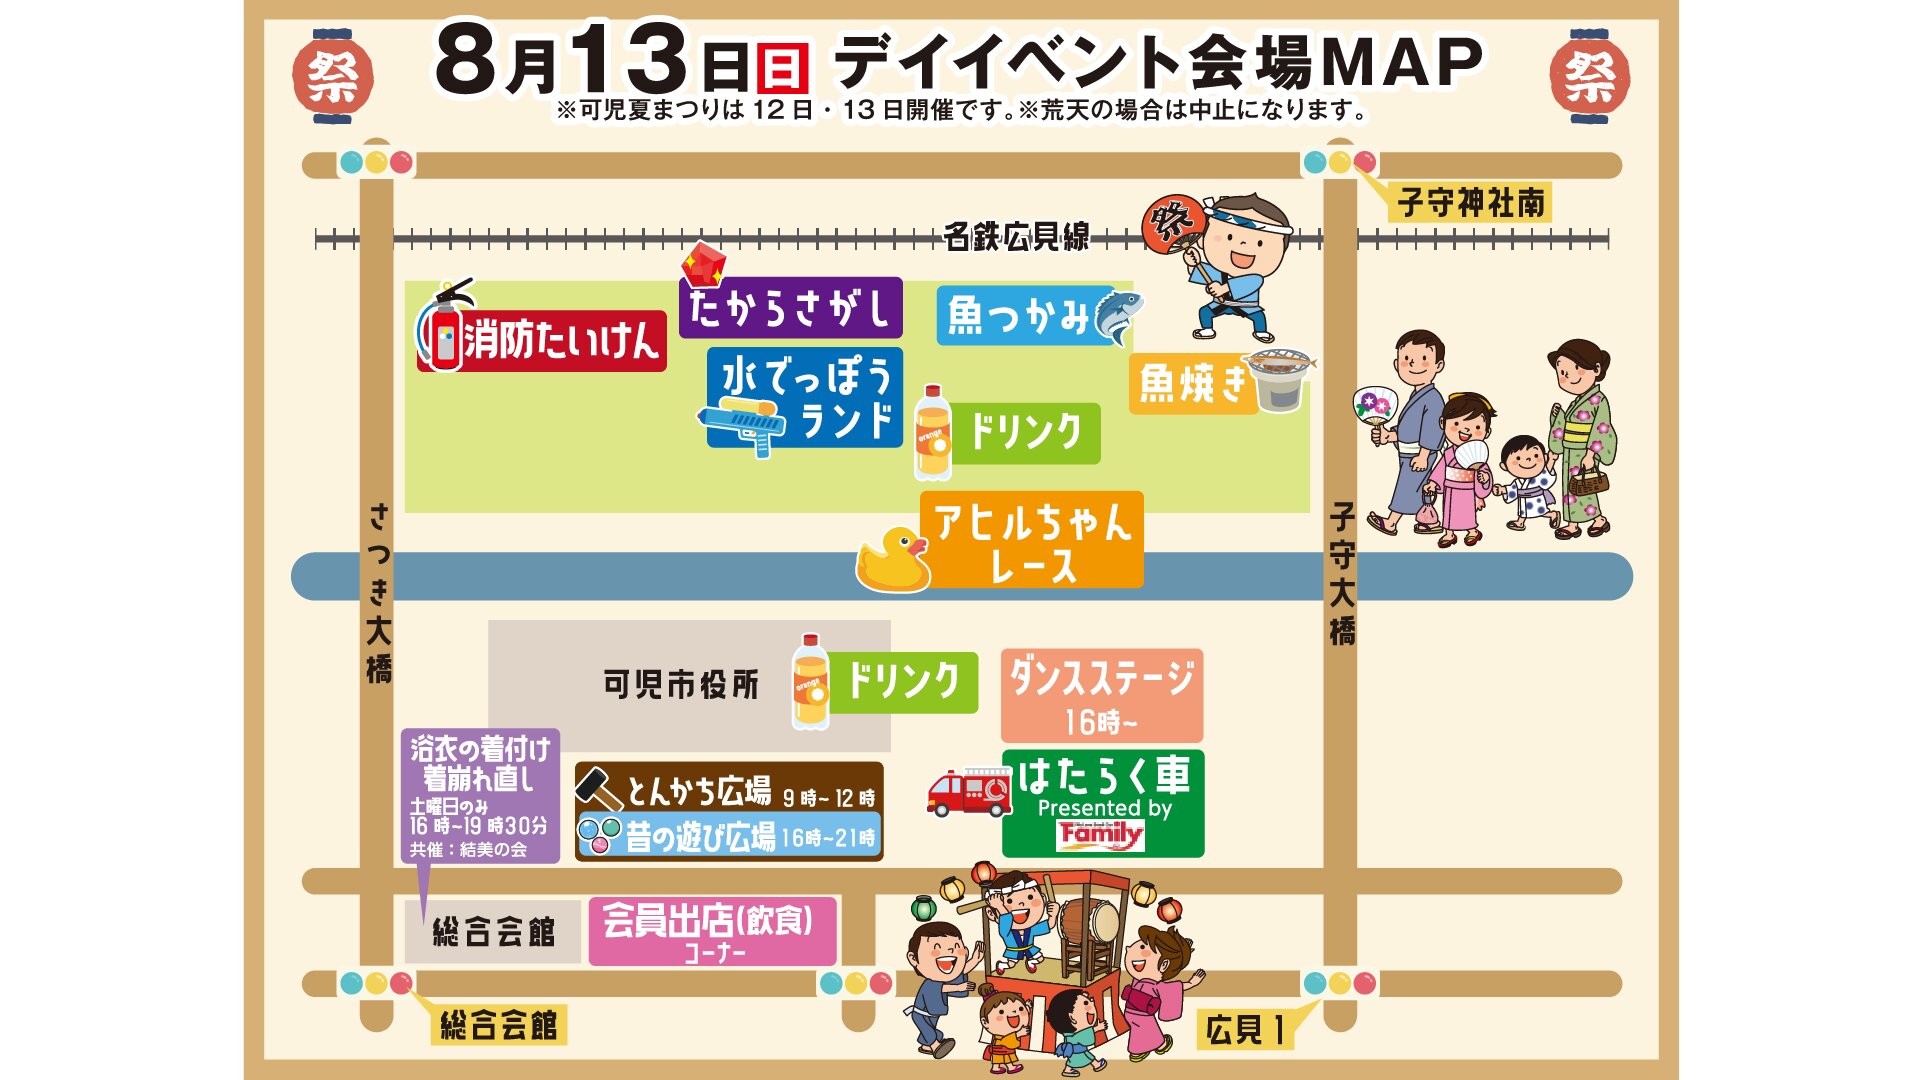 デイイベント会場MAP　画像提供・可児夏まつり2023実行委員会様